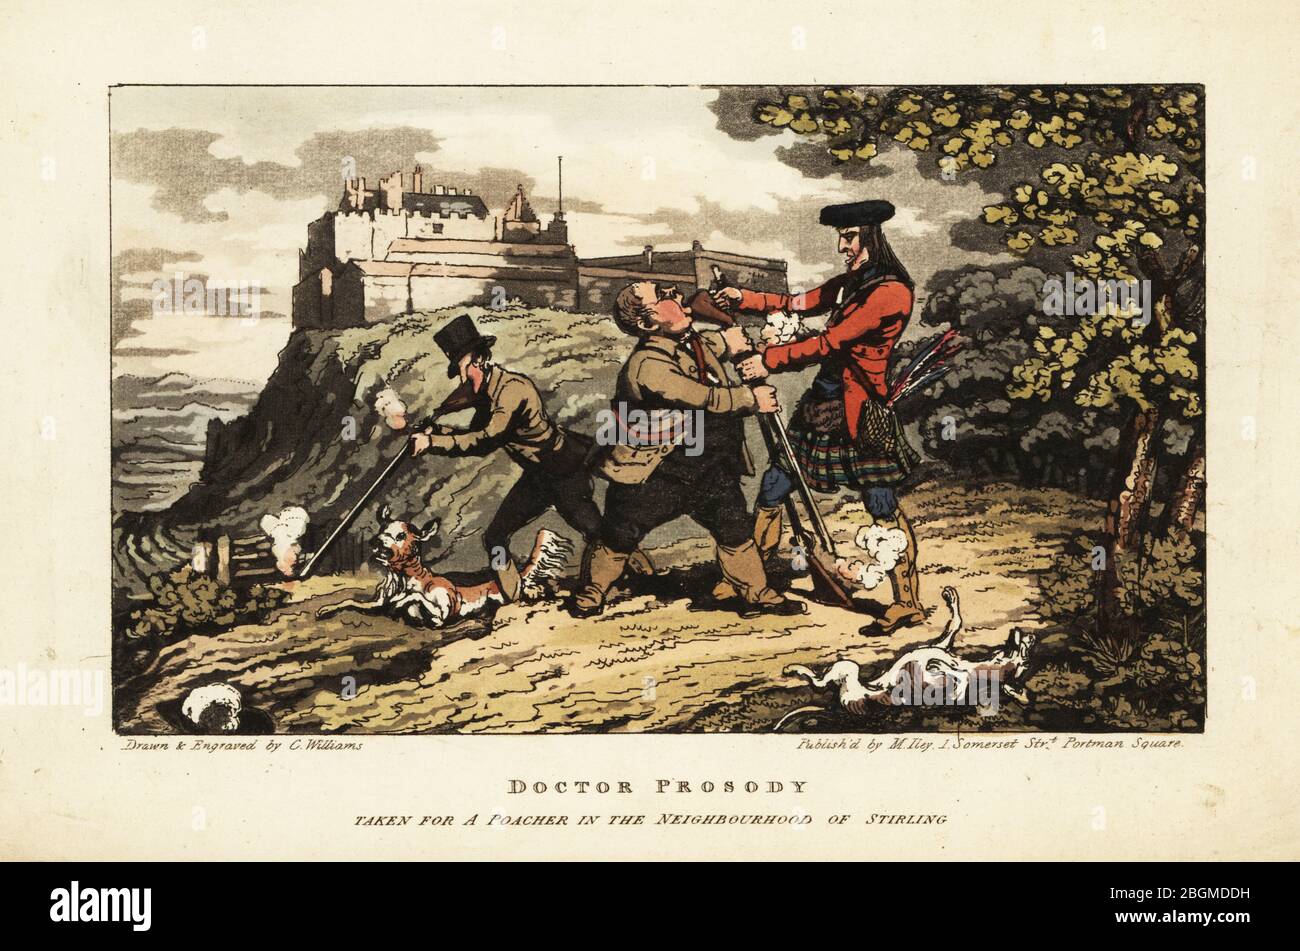 Les touristes anglais chassent dans les hauts-terres de l'Ecosse, pris par un gardien de but écossais dans le tartan kilt et les guêtres. Le docteur prosody a pris pour un poacher dans le quartier de Stirling. Gravure en copperplate dessinée et gravée par Charles Williams du Tour du Docteur prosody de William Combe, à la recherche de l'antiquité et du pittoresque, à travers l'Ecosse, les Hébrides, les îles Orkney et Shetland, Matthew Illy, Londres, 1821. Banque D'Images